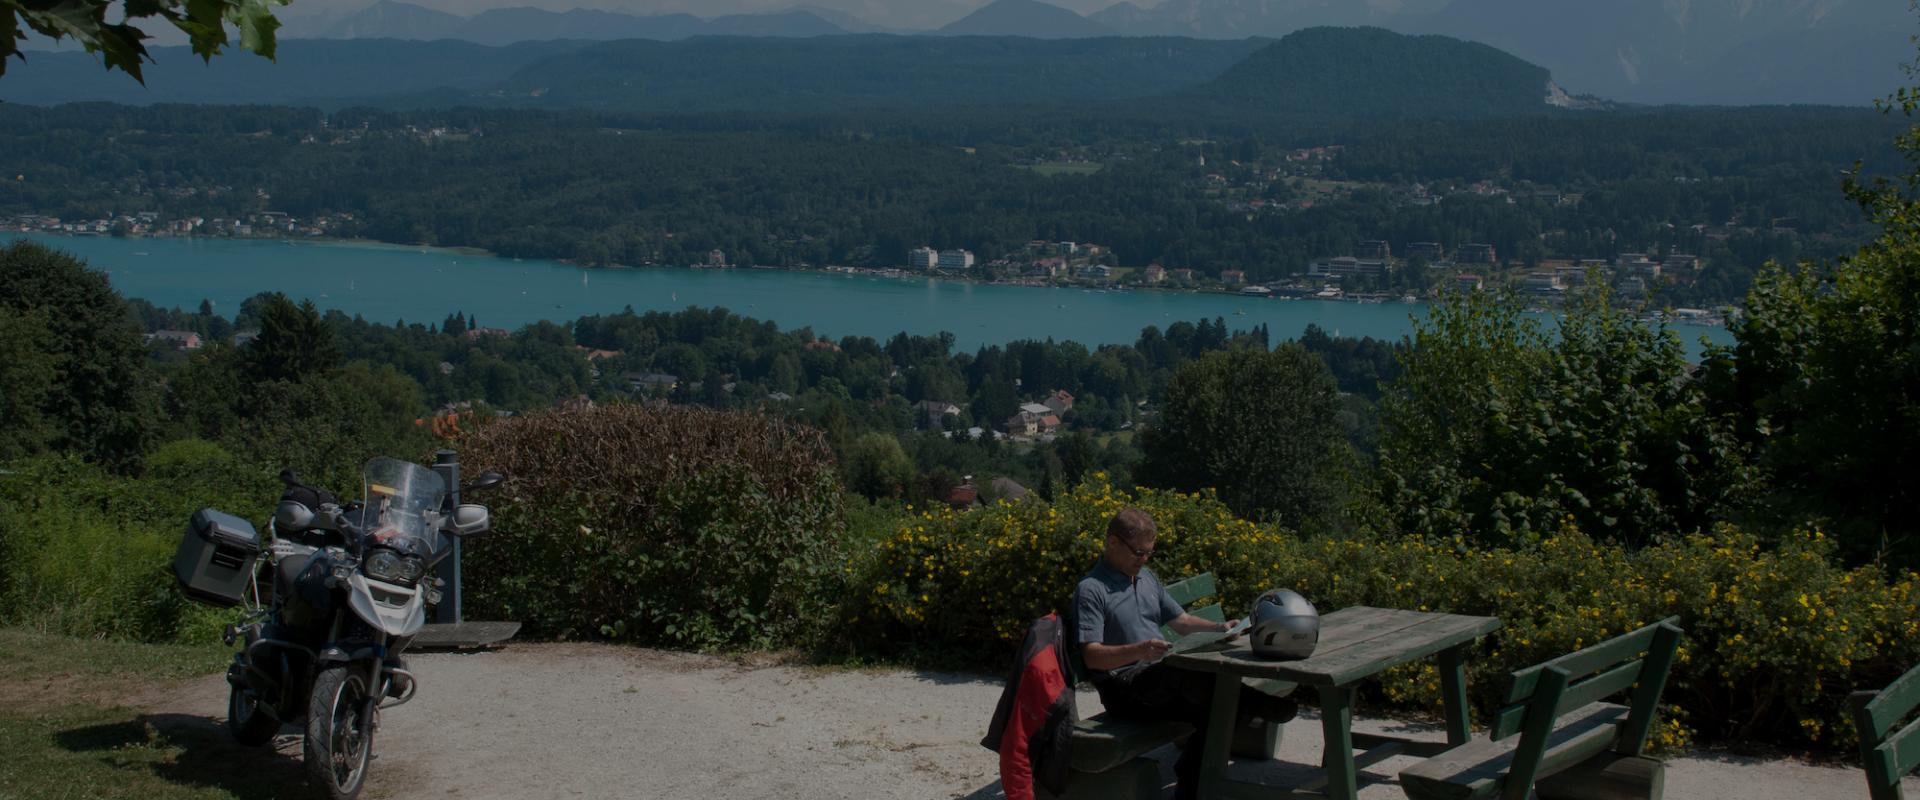 Motorradfahrer macht Pause oberhalb eines Sees auf Motorradtour in Kärnten